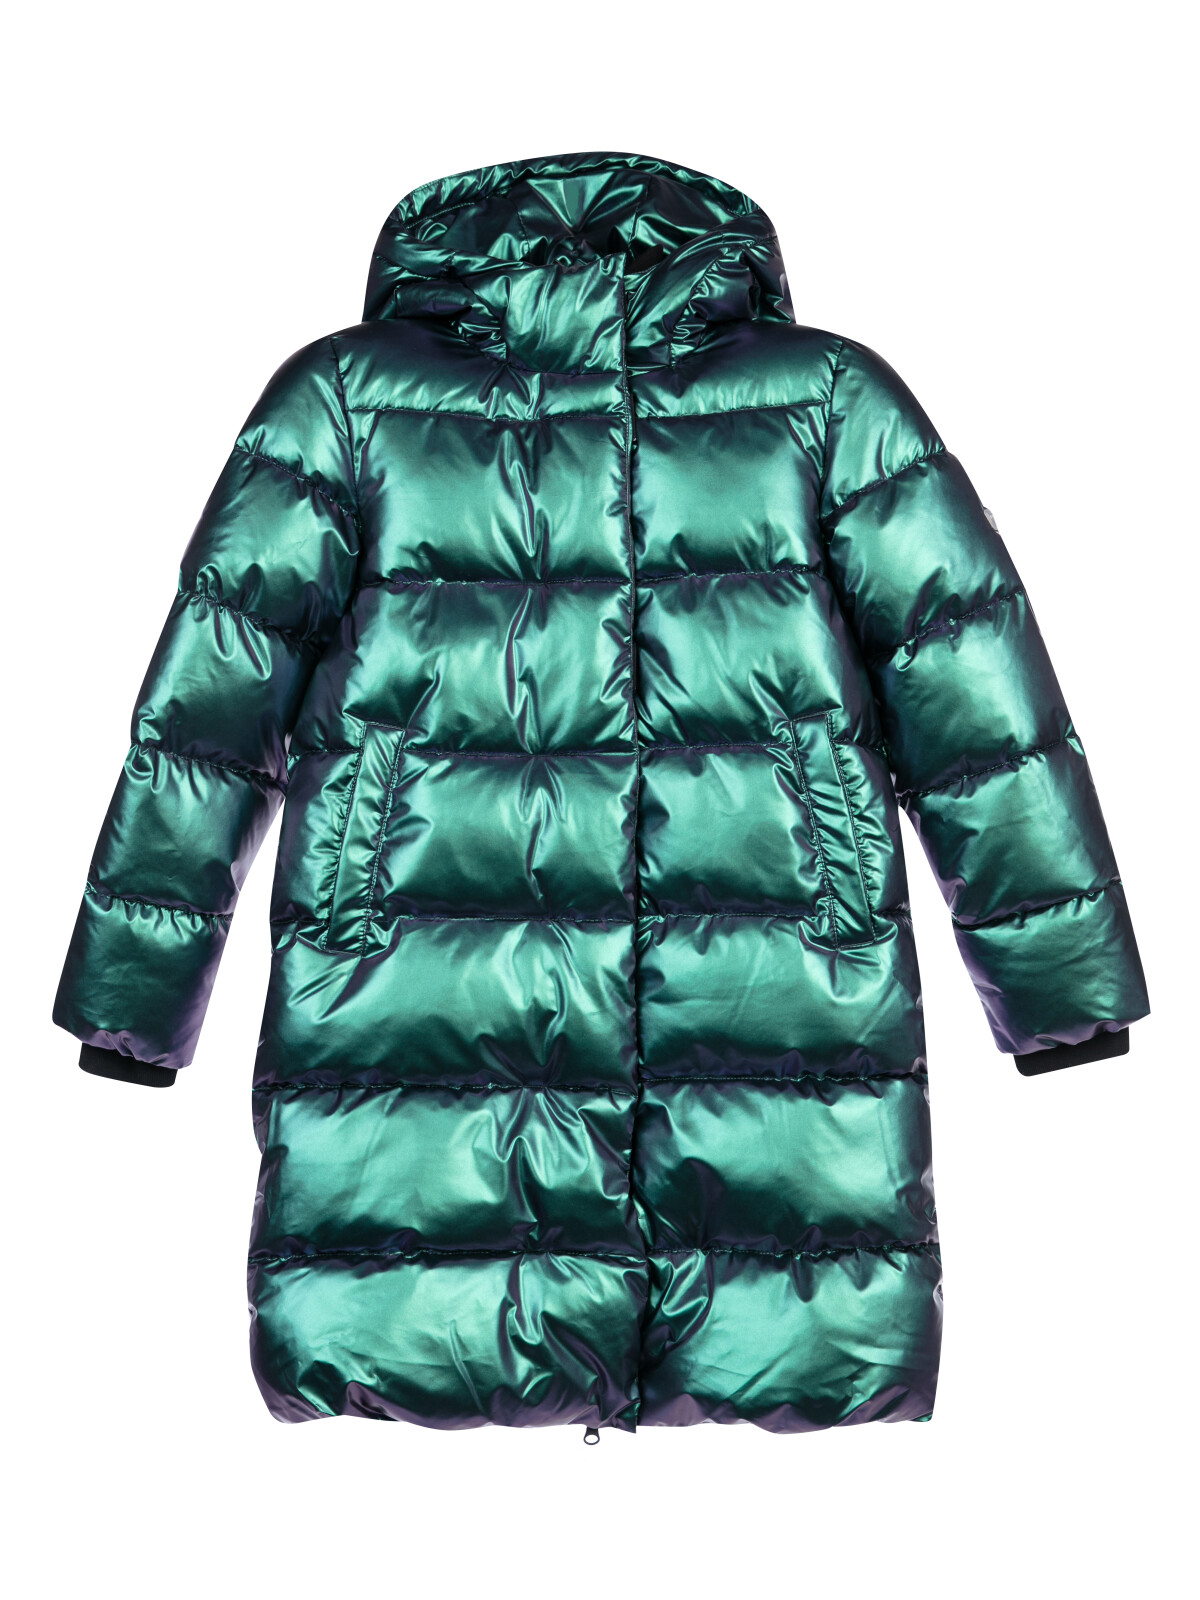 Пальто текстильное с полиуретановым покрытием для девочек PlayToday, фиолетовый, 170 халат для девочек bio textiles nvkd цв фиолетовый р 140